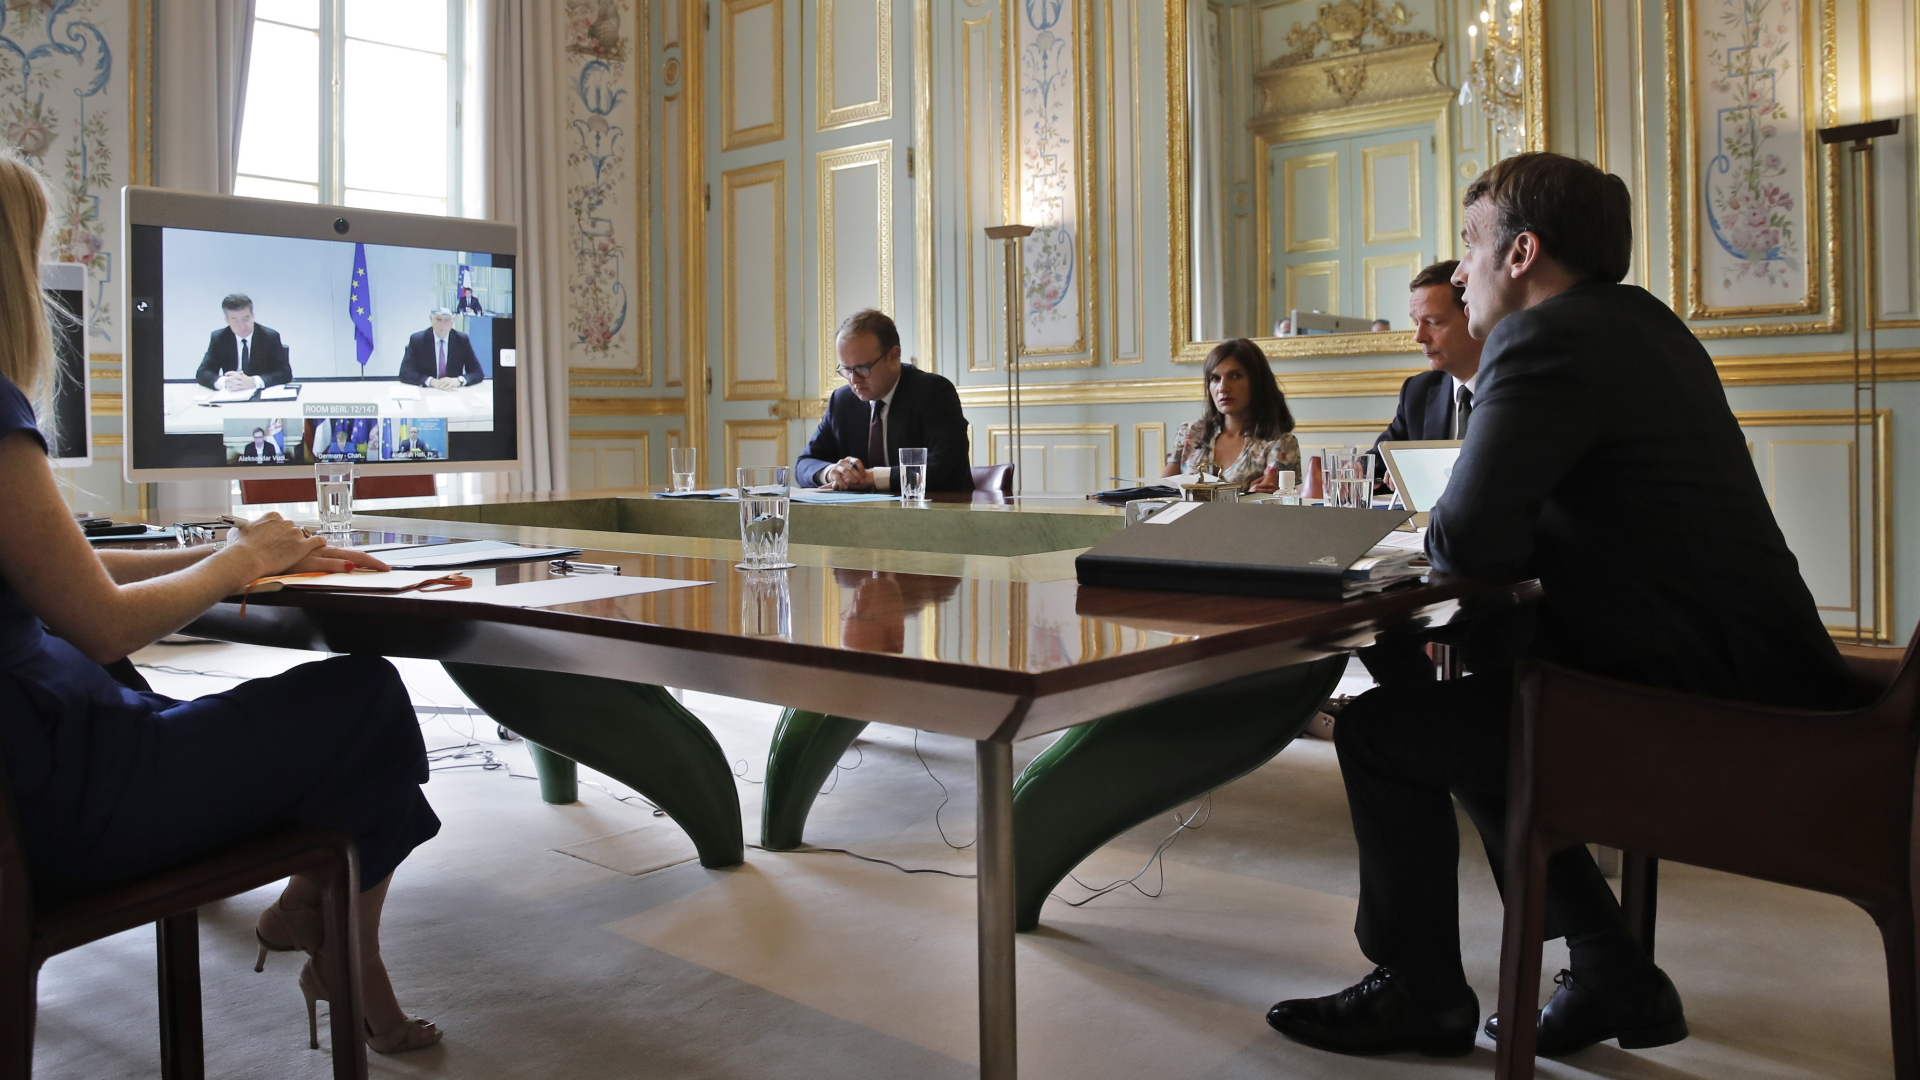 10.07.2020, Frankreich, Paris: Emmanuel Macron (r), Präsident von Frankreich, nimmt an einer Video-Konferenz mit Bundeskanzlerin Merkel, Serbiens Präsident Vucic, dem kosovarischen Ministerpräsident Hoti, dem EU-Außenbeauftragten Borrell und dem EU-Sonderbeauftragten für den Balkan Lajcak teil.  | dpa